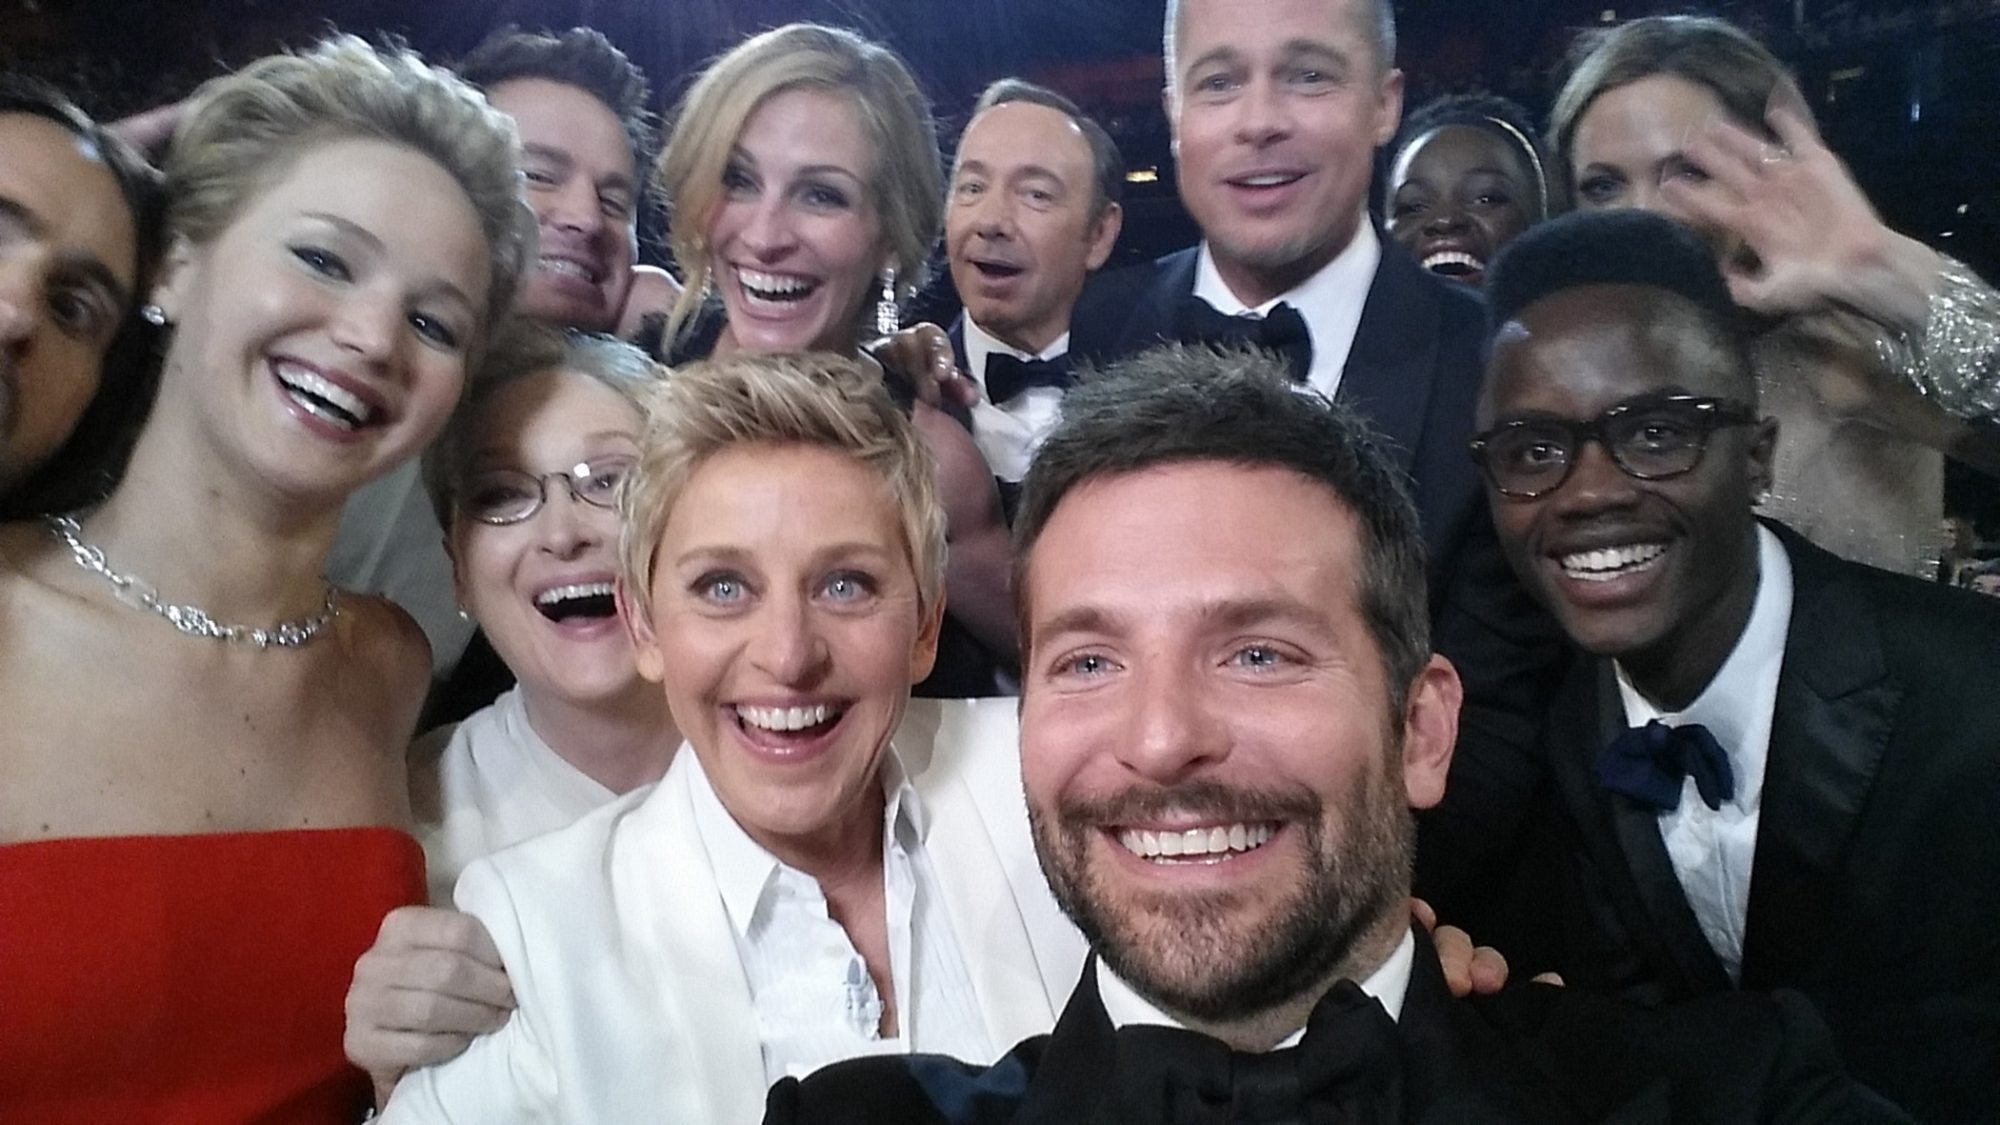 Para Nigel Hurst, diretor executivo da galeria, a 'selfie' é um grande exemplo de como a sociedade está a mudar. A selfie coletiva tirada numa recente cerimónia dos Óscares de Hollywood é um bom exemplo.